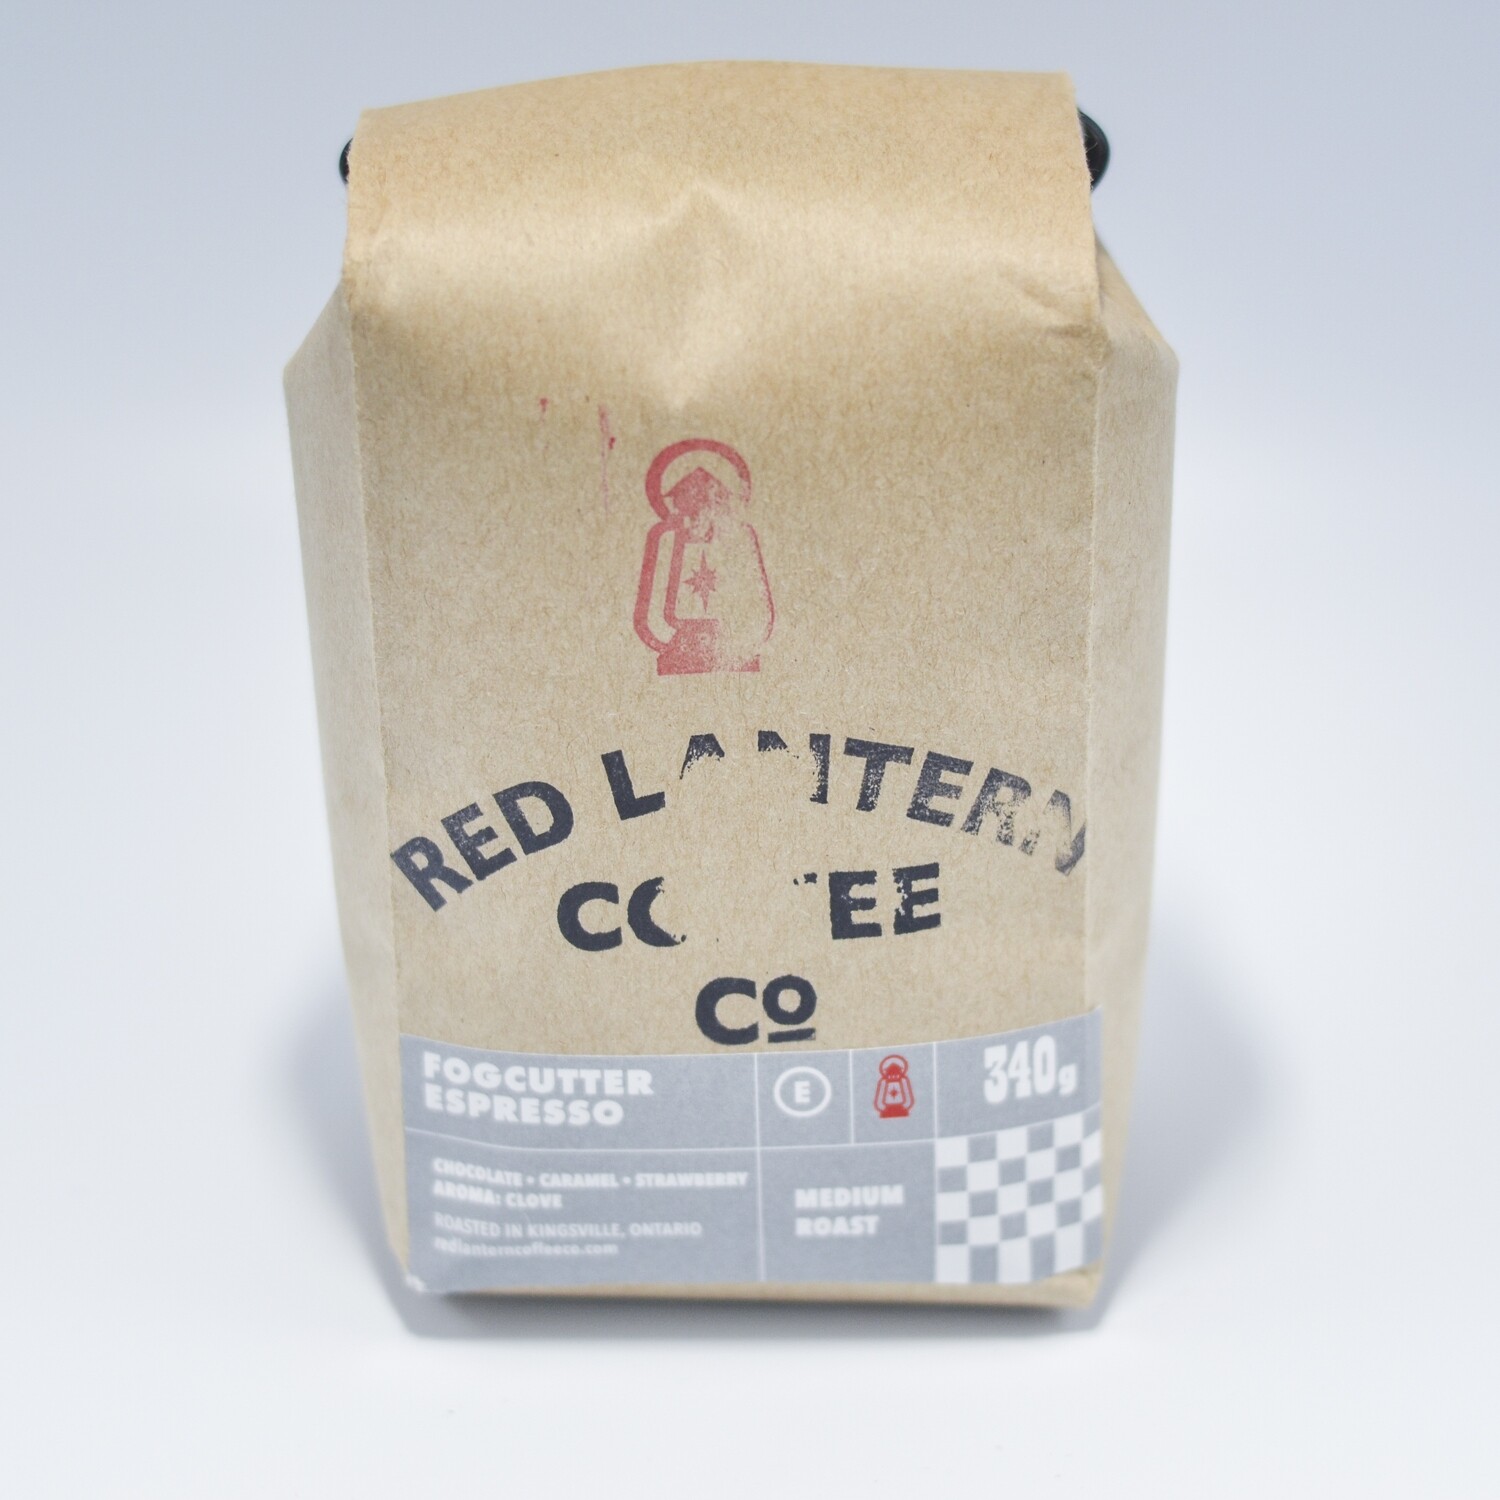 Red Lantern -  Fogcutter Espresso